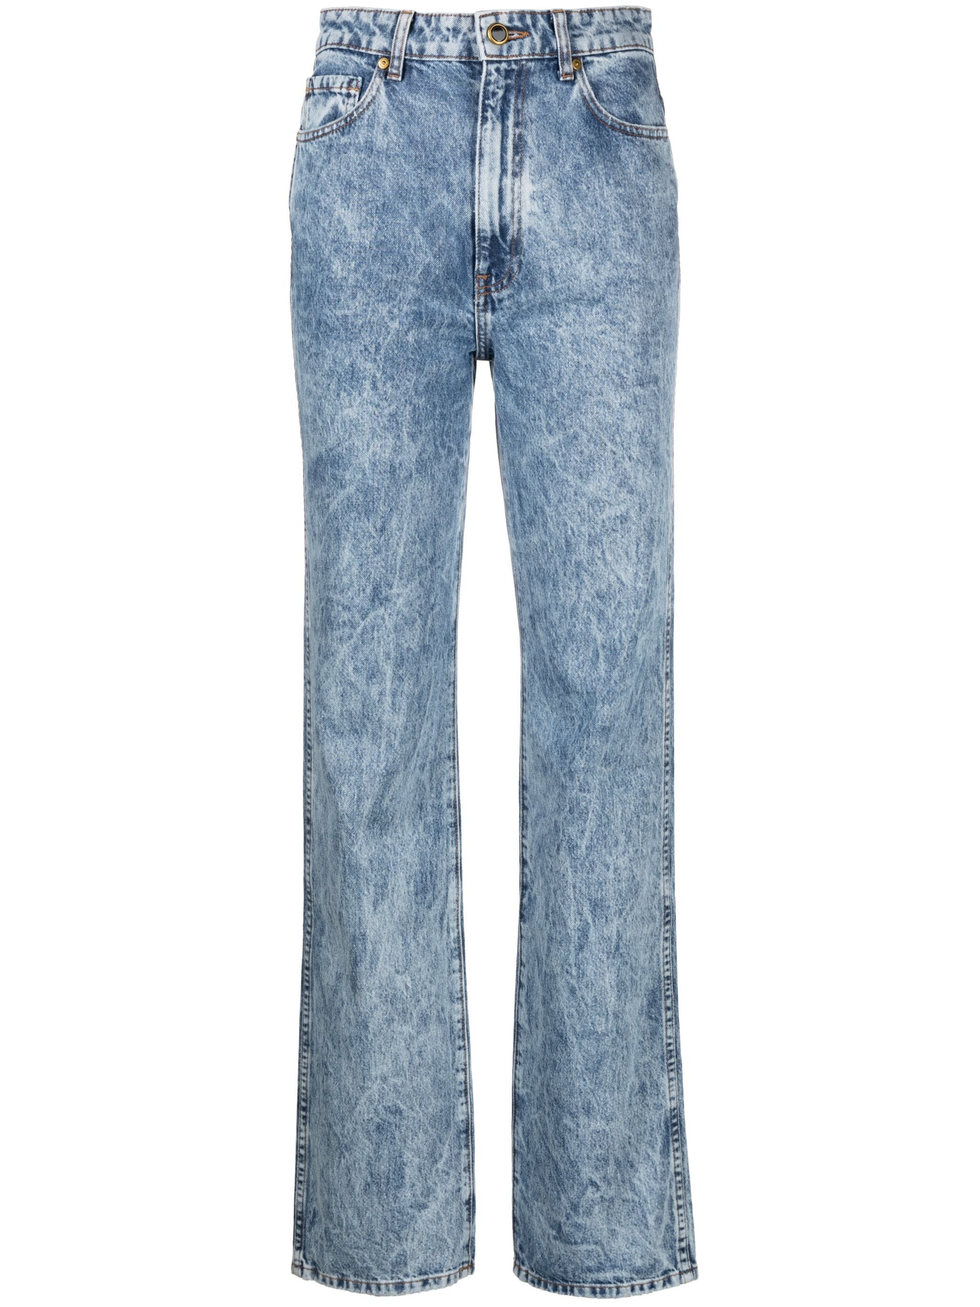 Bleached Denim Jeans - Women - Ready-to-Wear